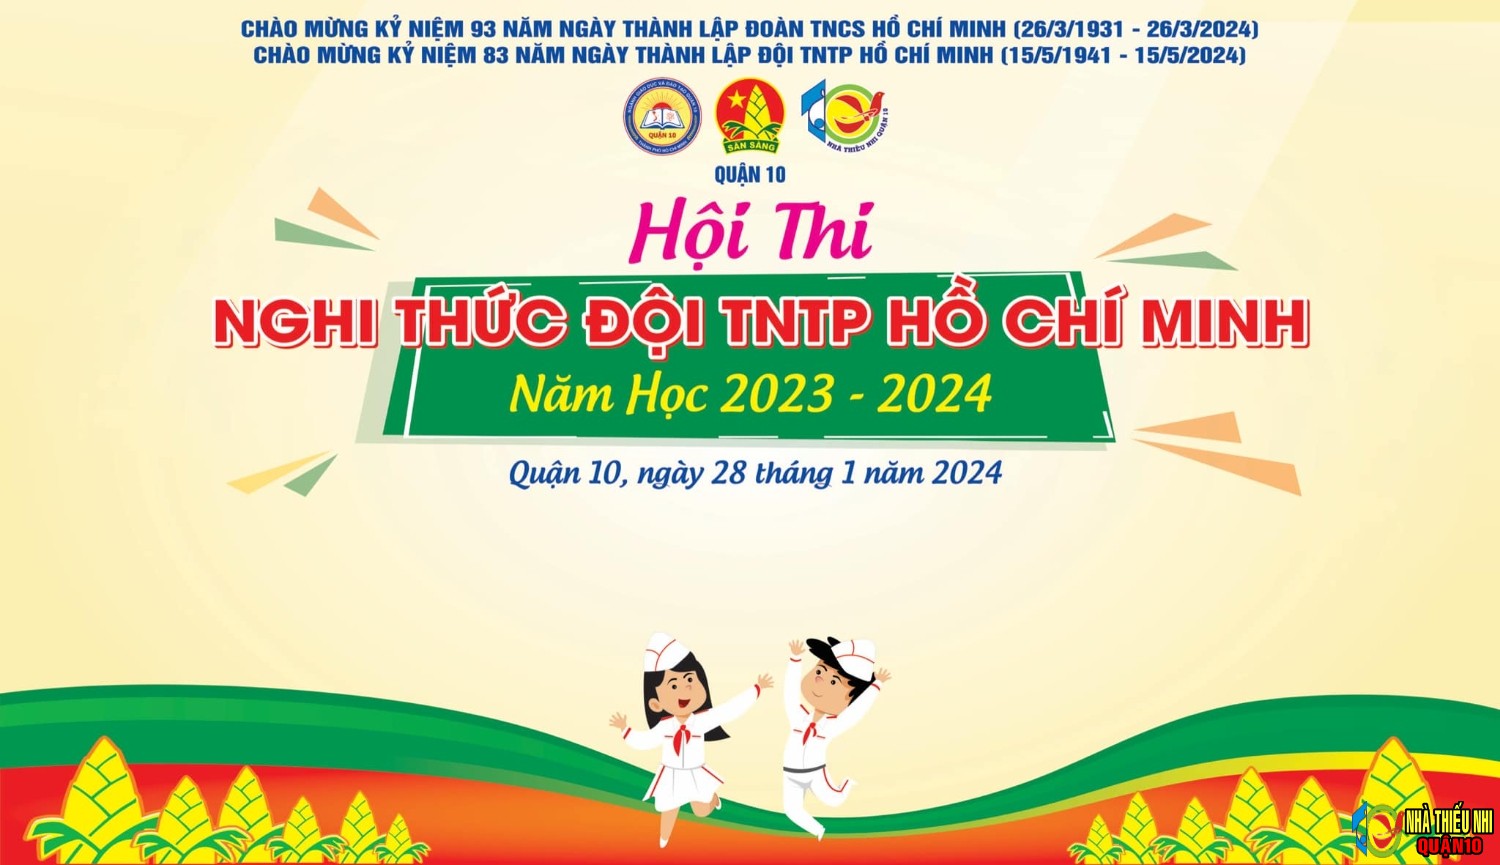 HỘI THI NGHI THỨC ĐỘI TNTP HỒ CHÍ MINH QUẬN 10 NĂM HỌC 2023 - 2024